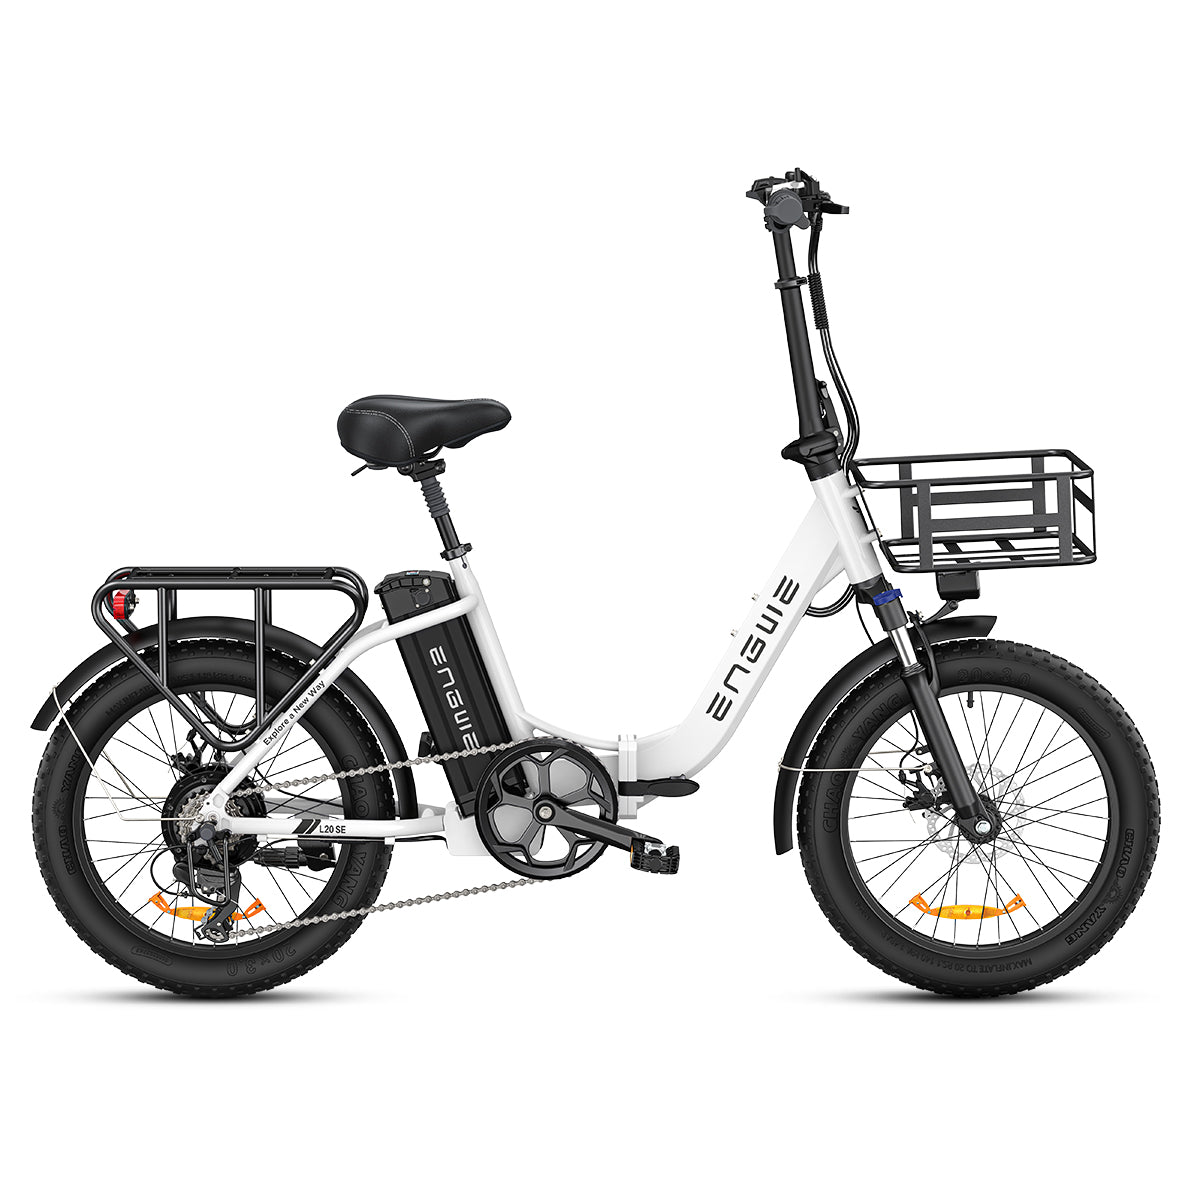 Engwe L20 SE 250W 20" Bicicletta Elettrica Pieghevole da Trekking 15.6Ah E-bike Passo-passo [Pre-Order]